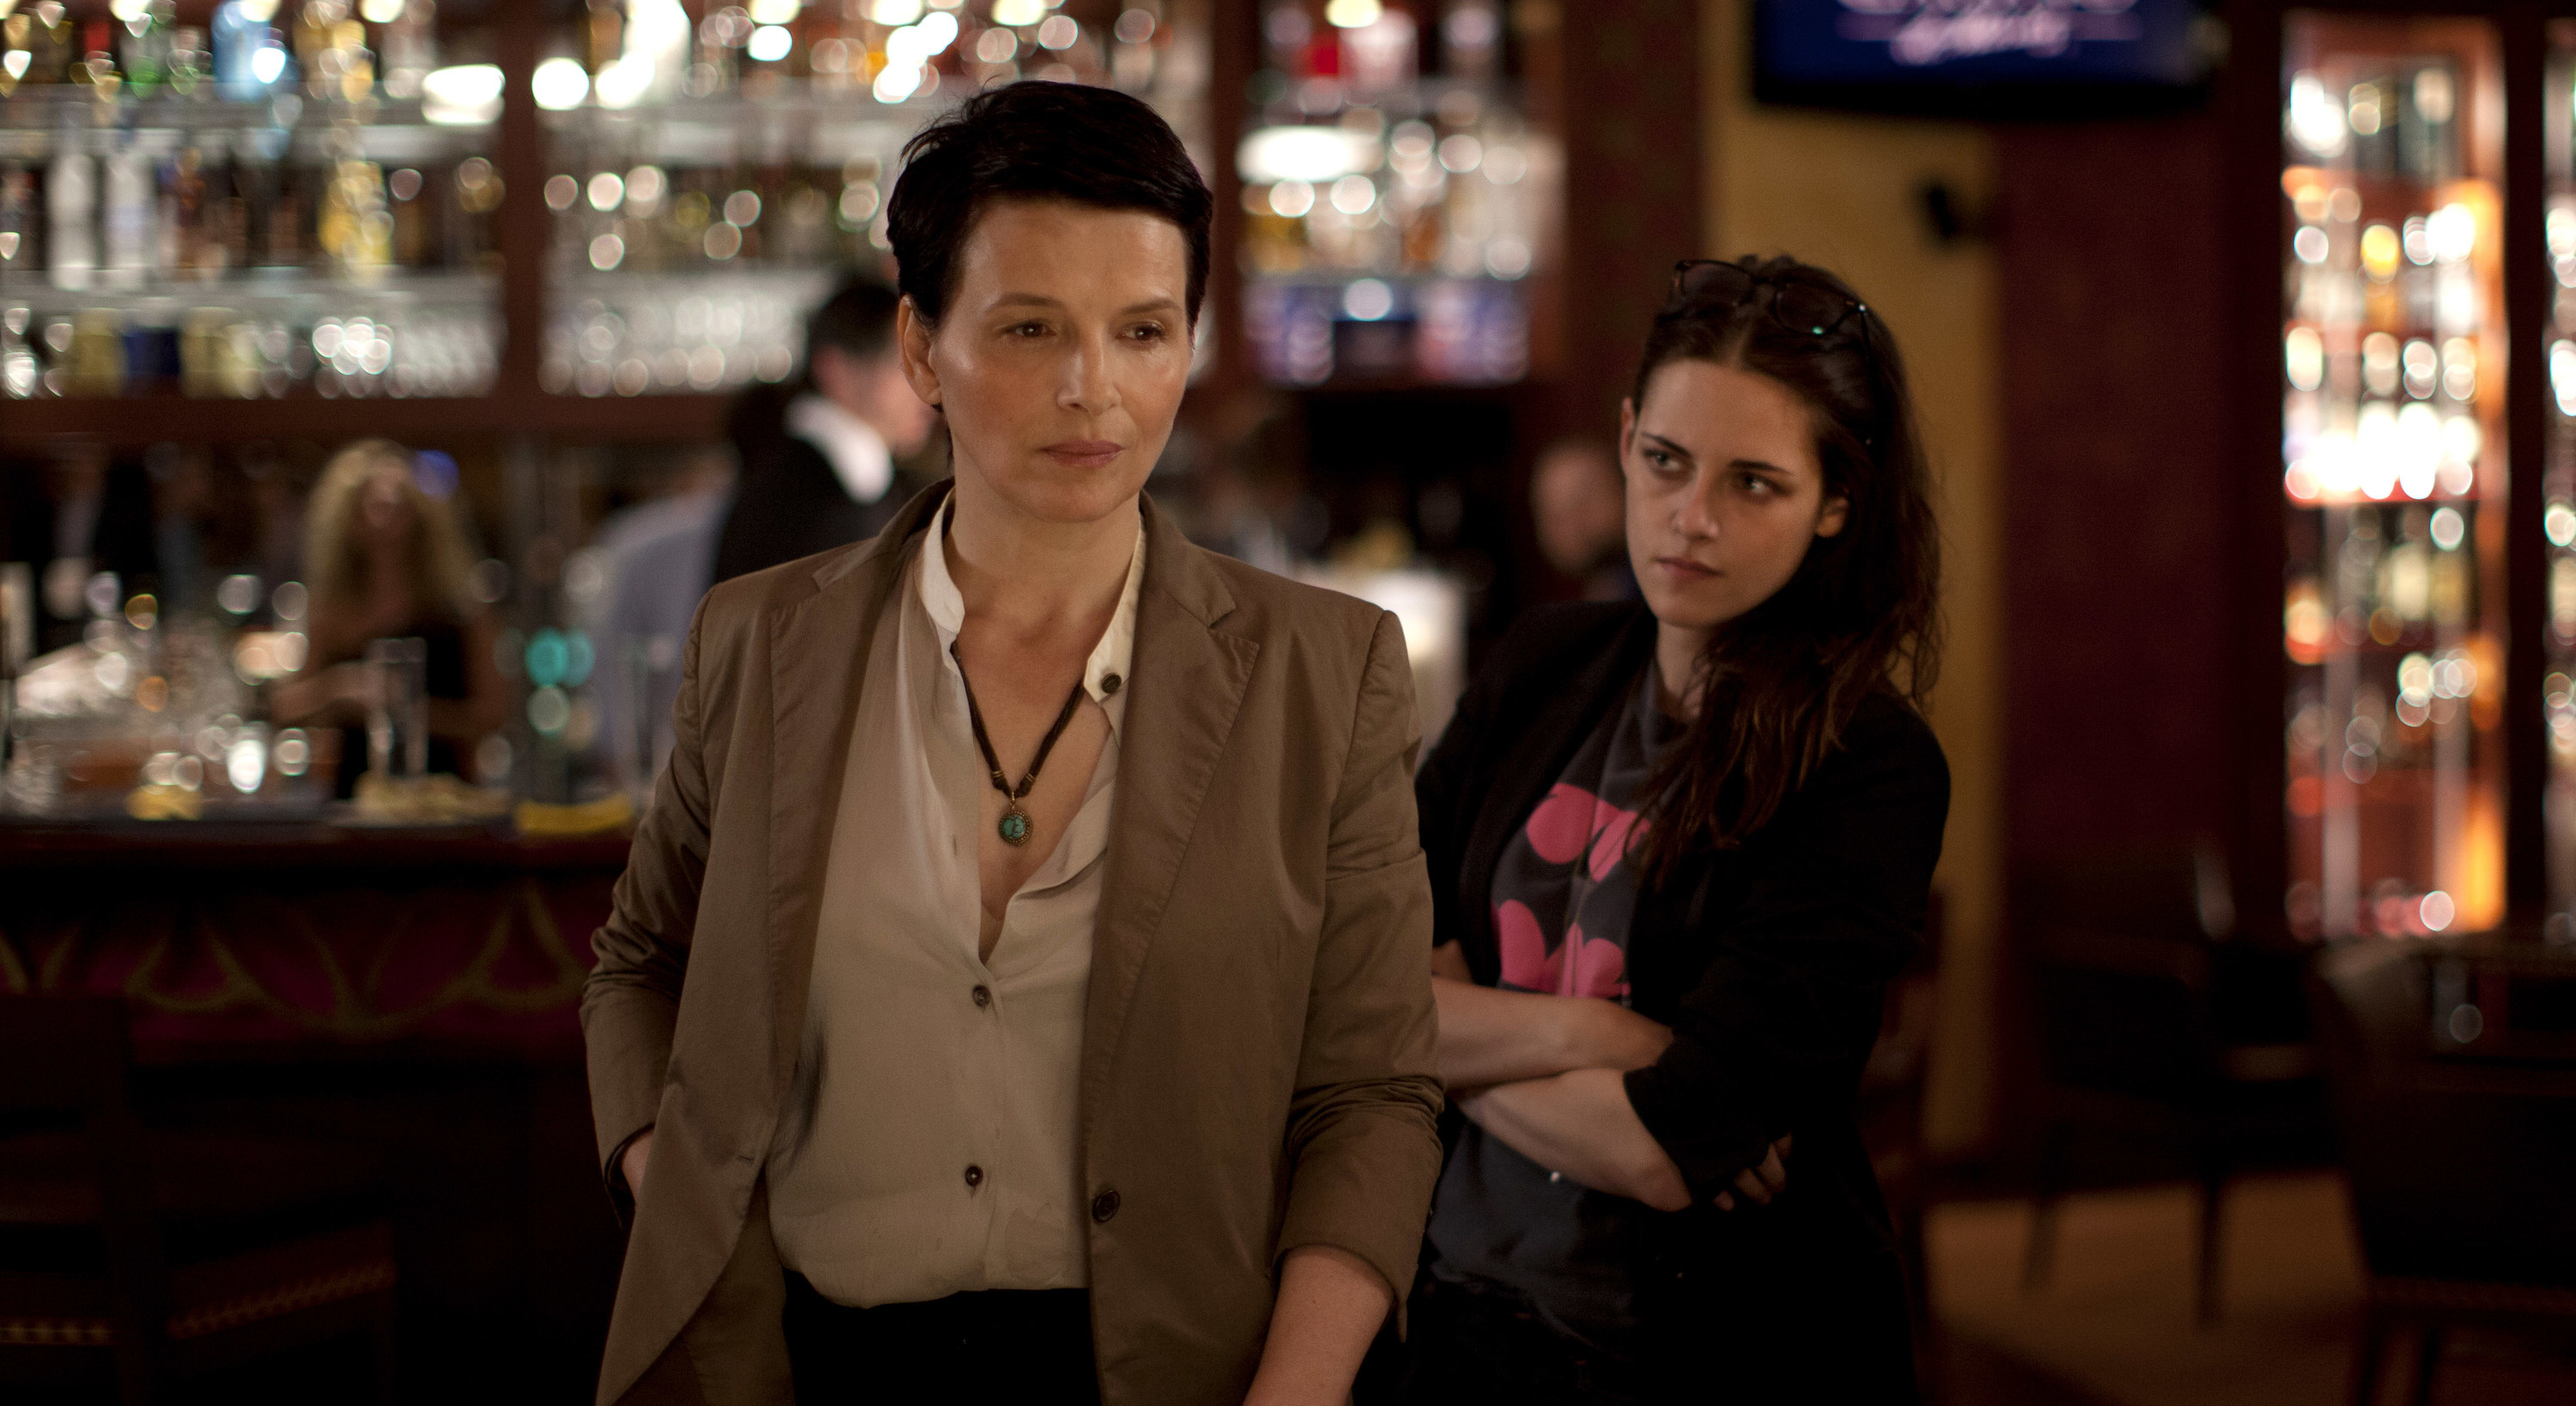 Juliette Binoche and Kristen Stewart stand in a bar